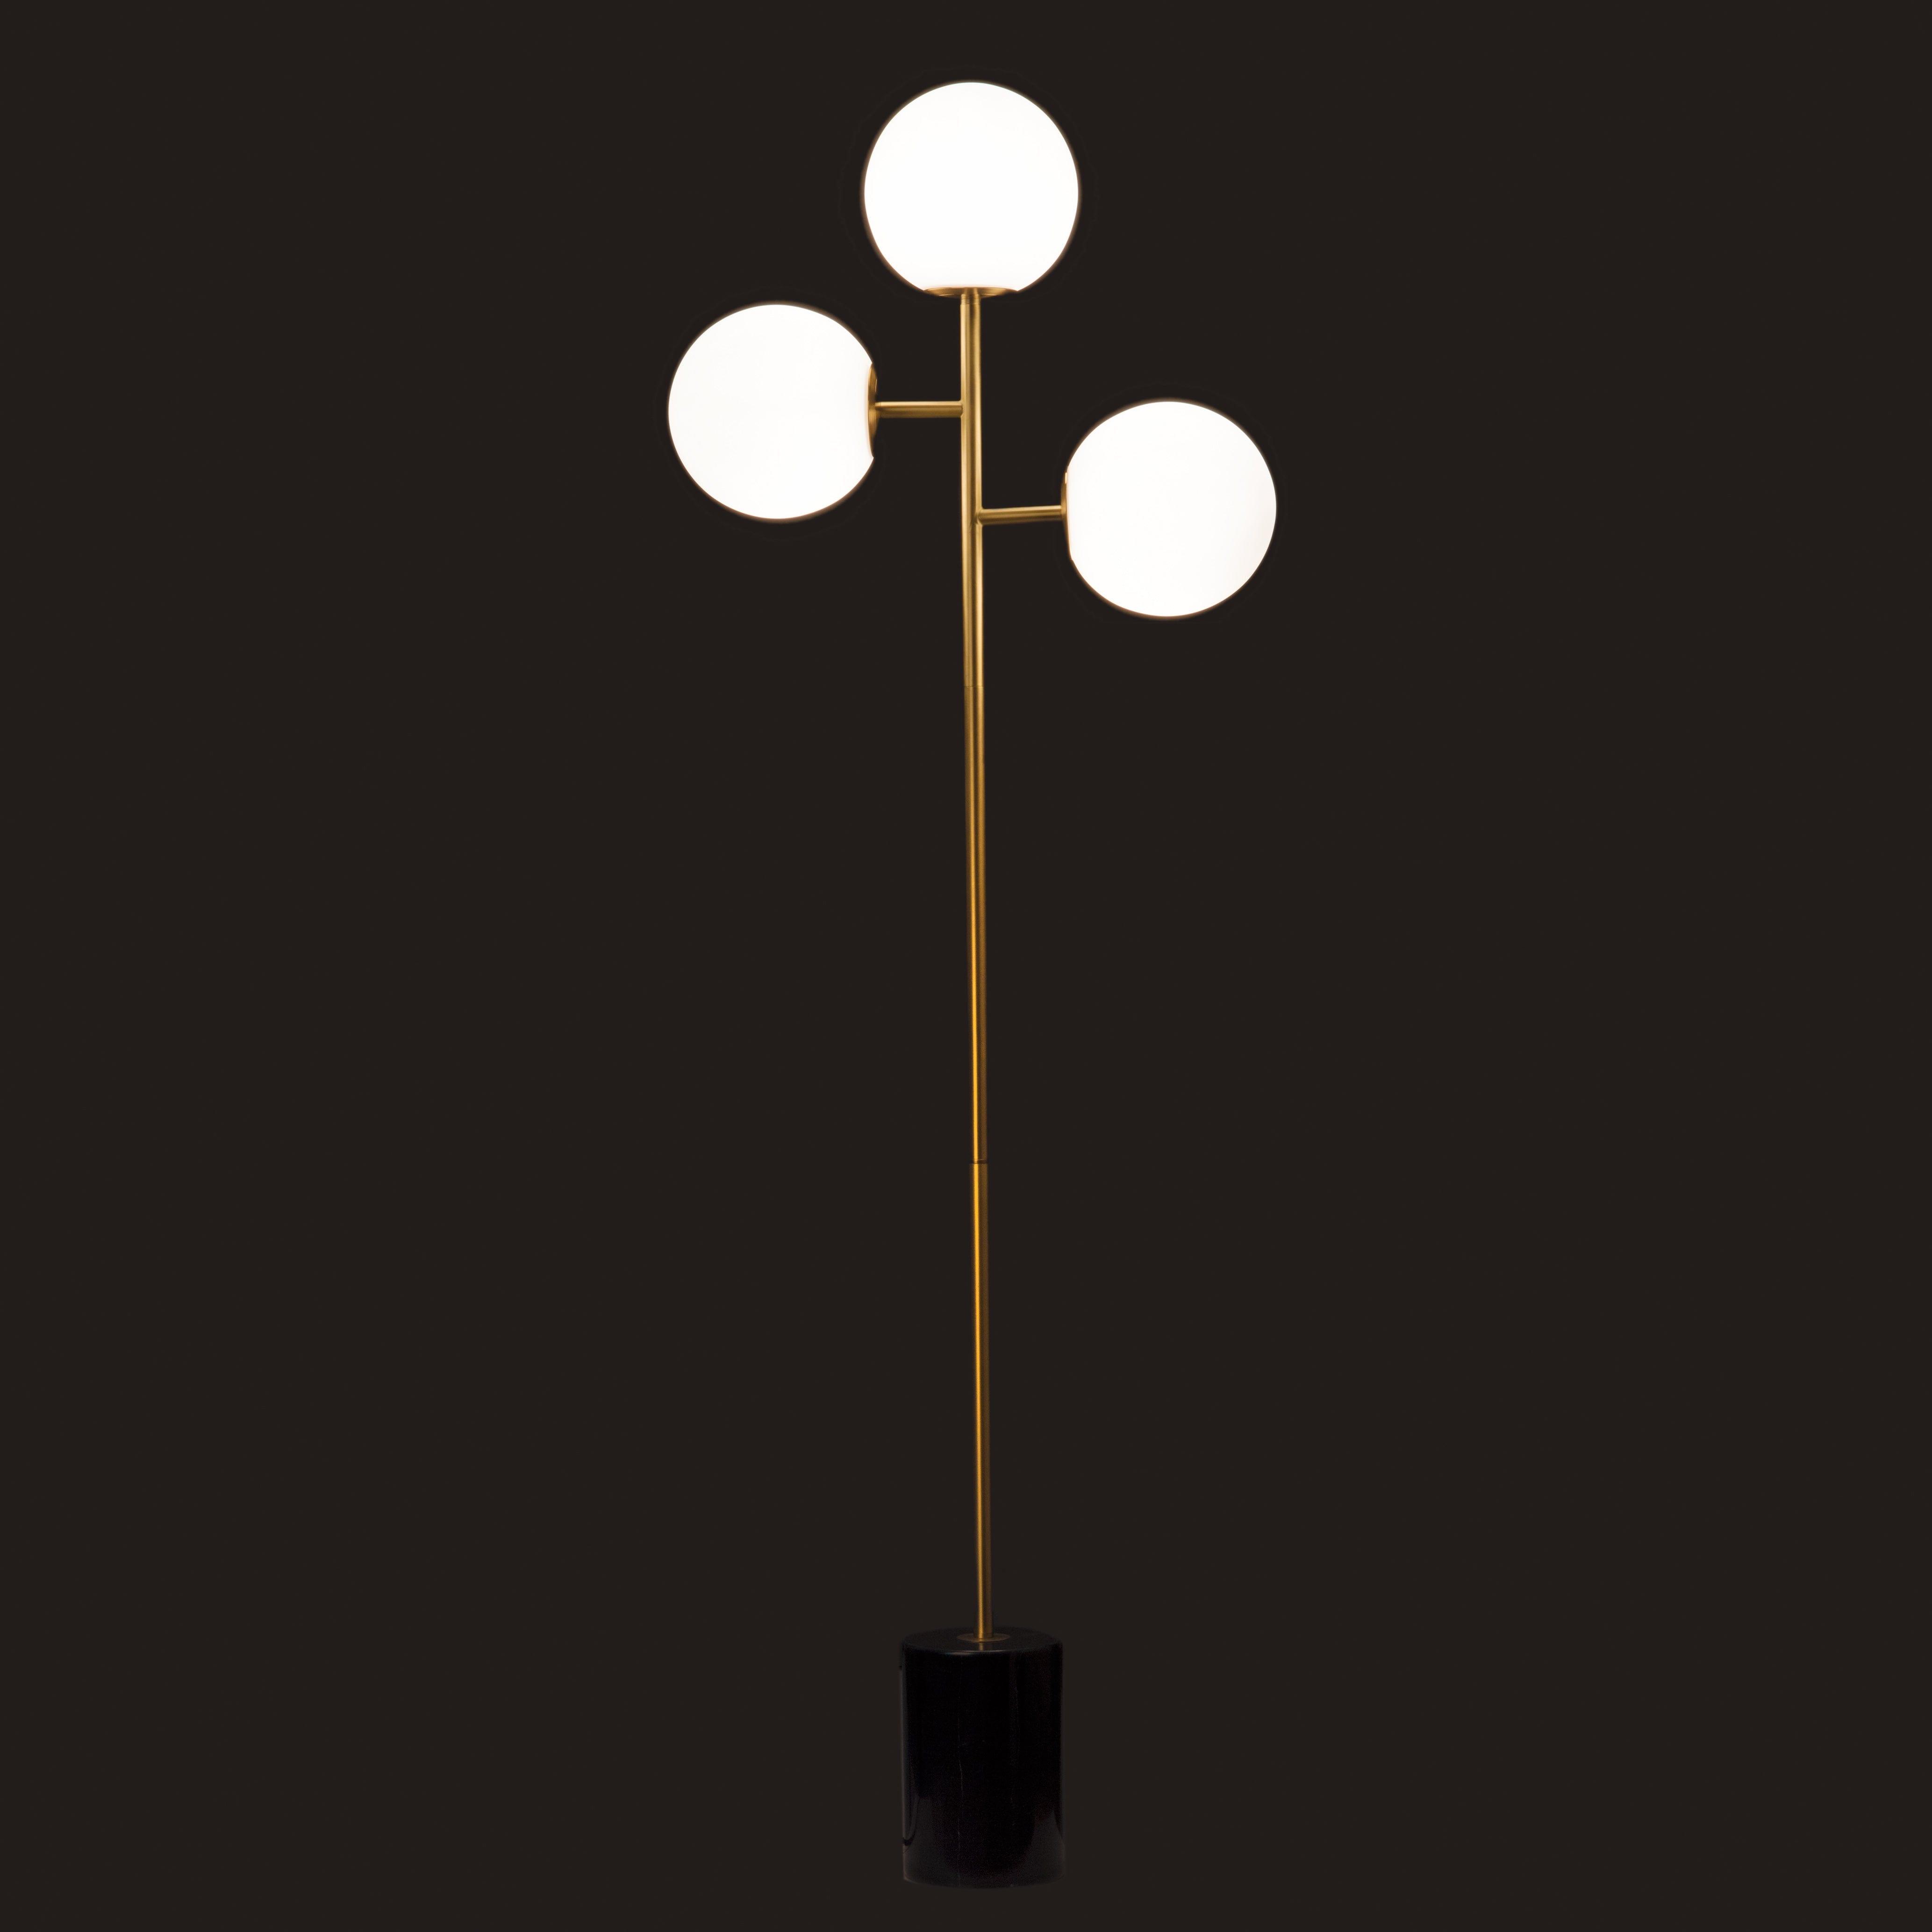 Lampa podłogowa FULL MOON złoty, Pols Potten, Eye on Design